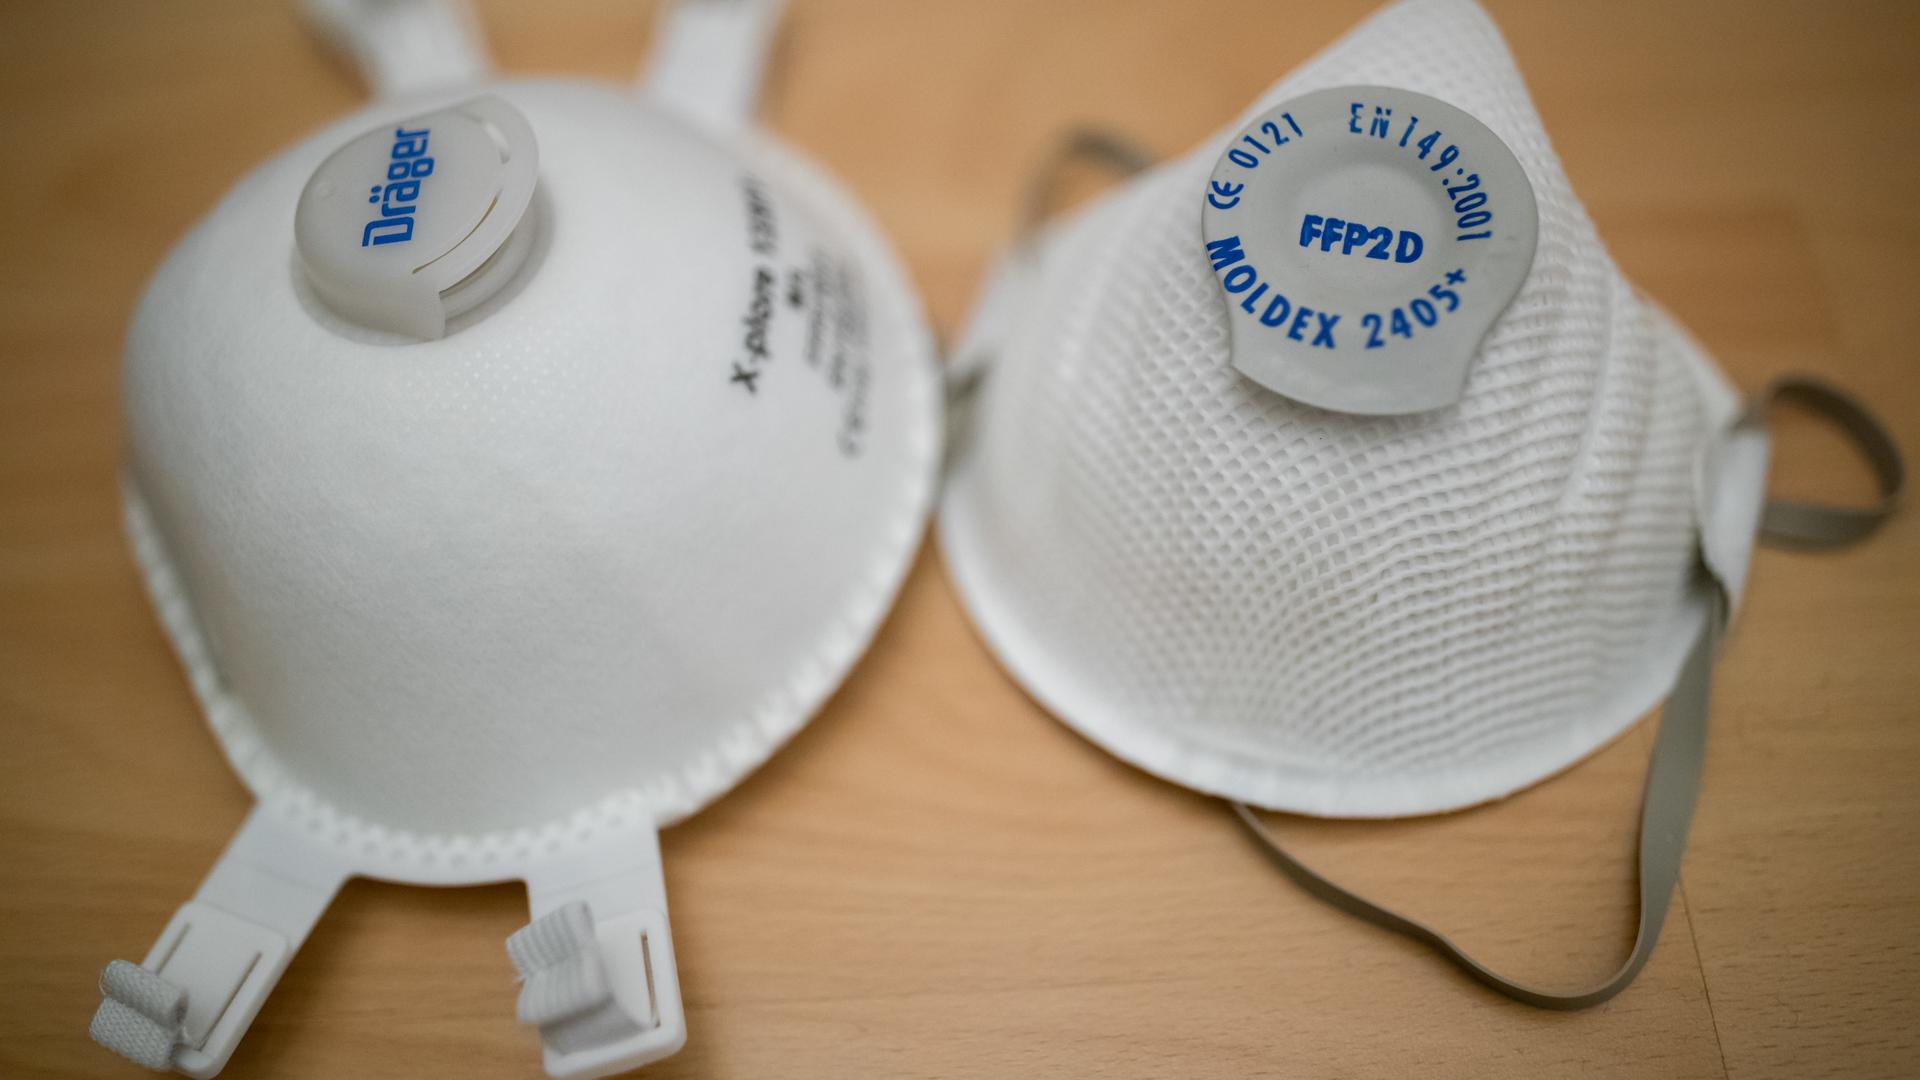 High-End-Schutzmasken: Ein Exemplar des Typs FFP2 (rechts) und daneben ein FFP3-Modell, das weitreichenden Schutz vor Viren bietet.